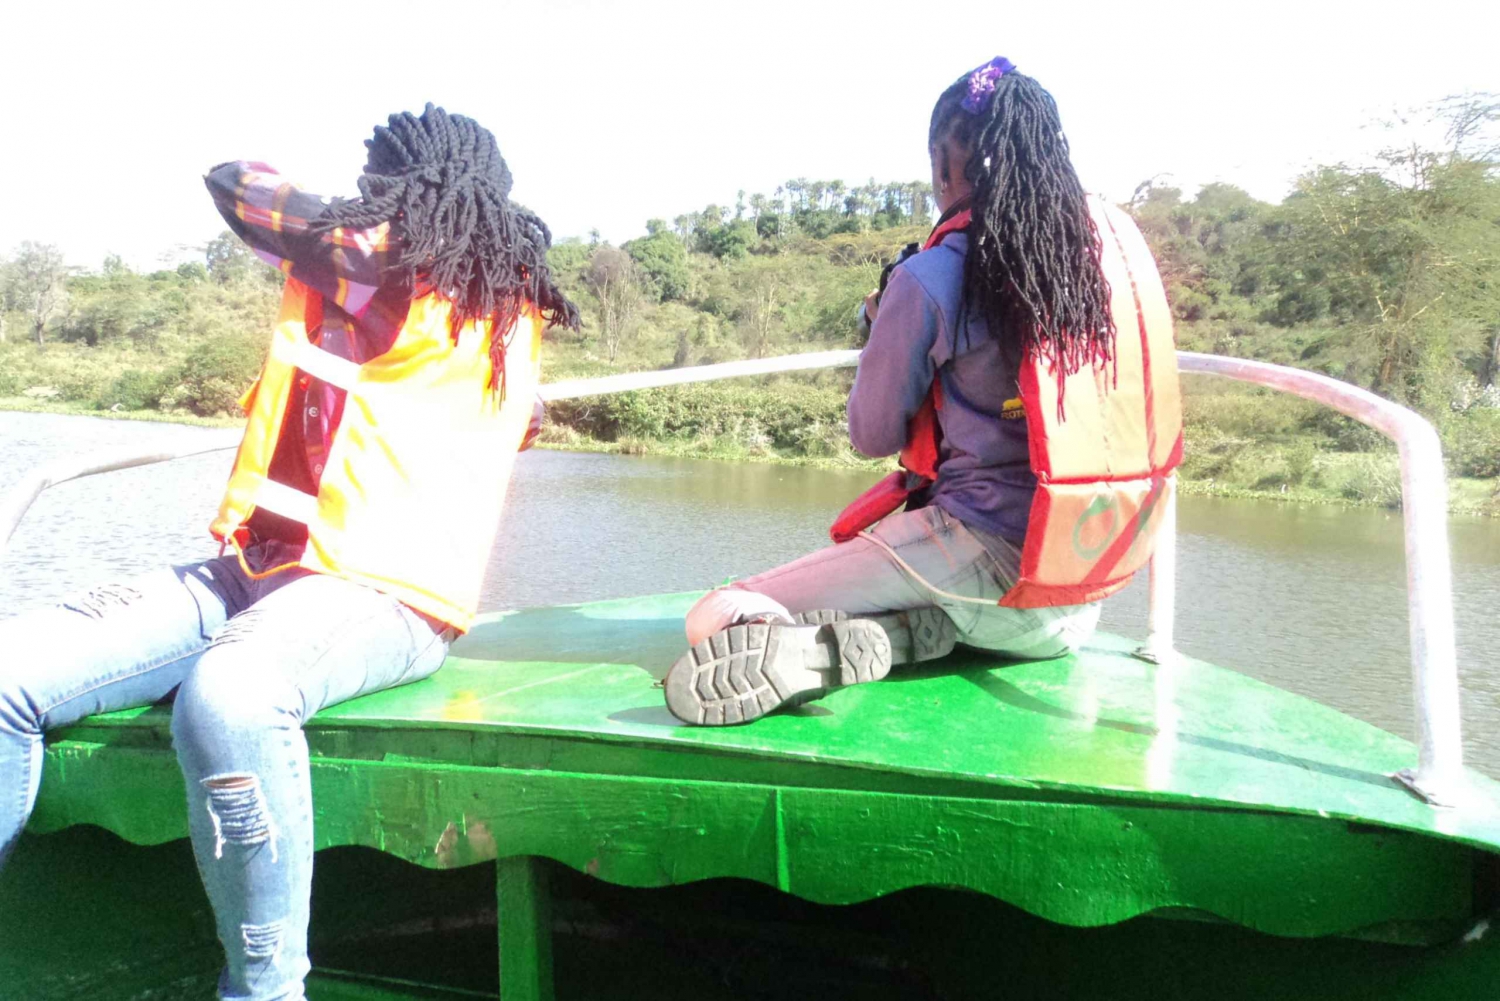 Tour di un giorno da Nairobi al lago Naivasha con Crescent Island